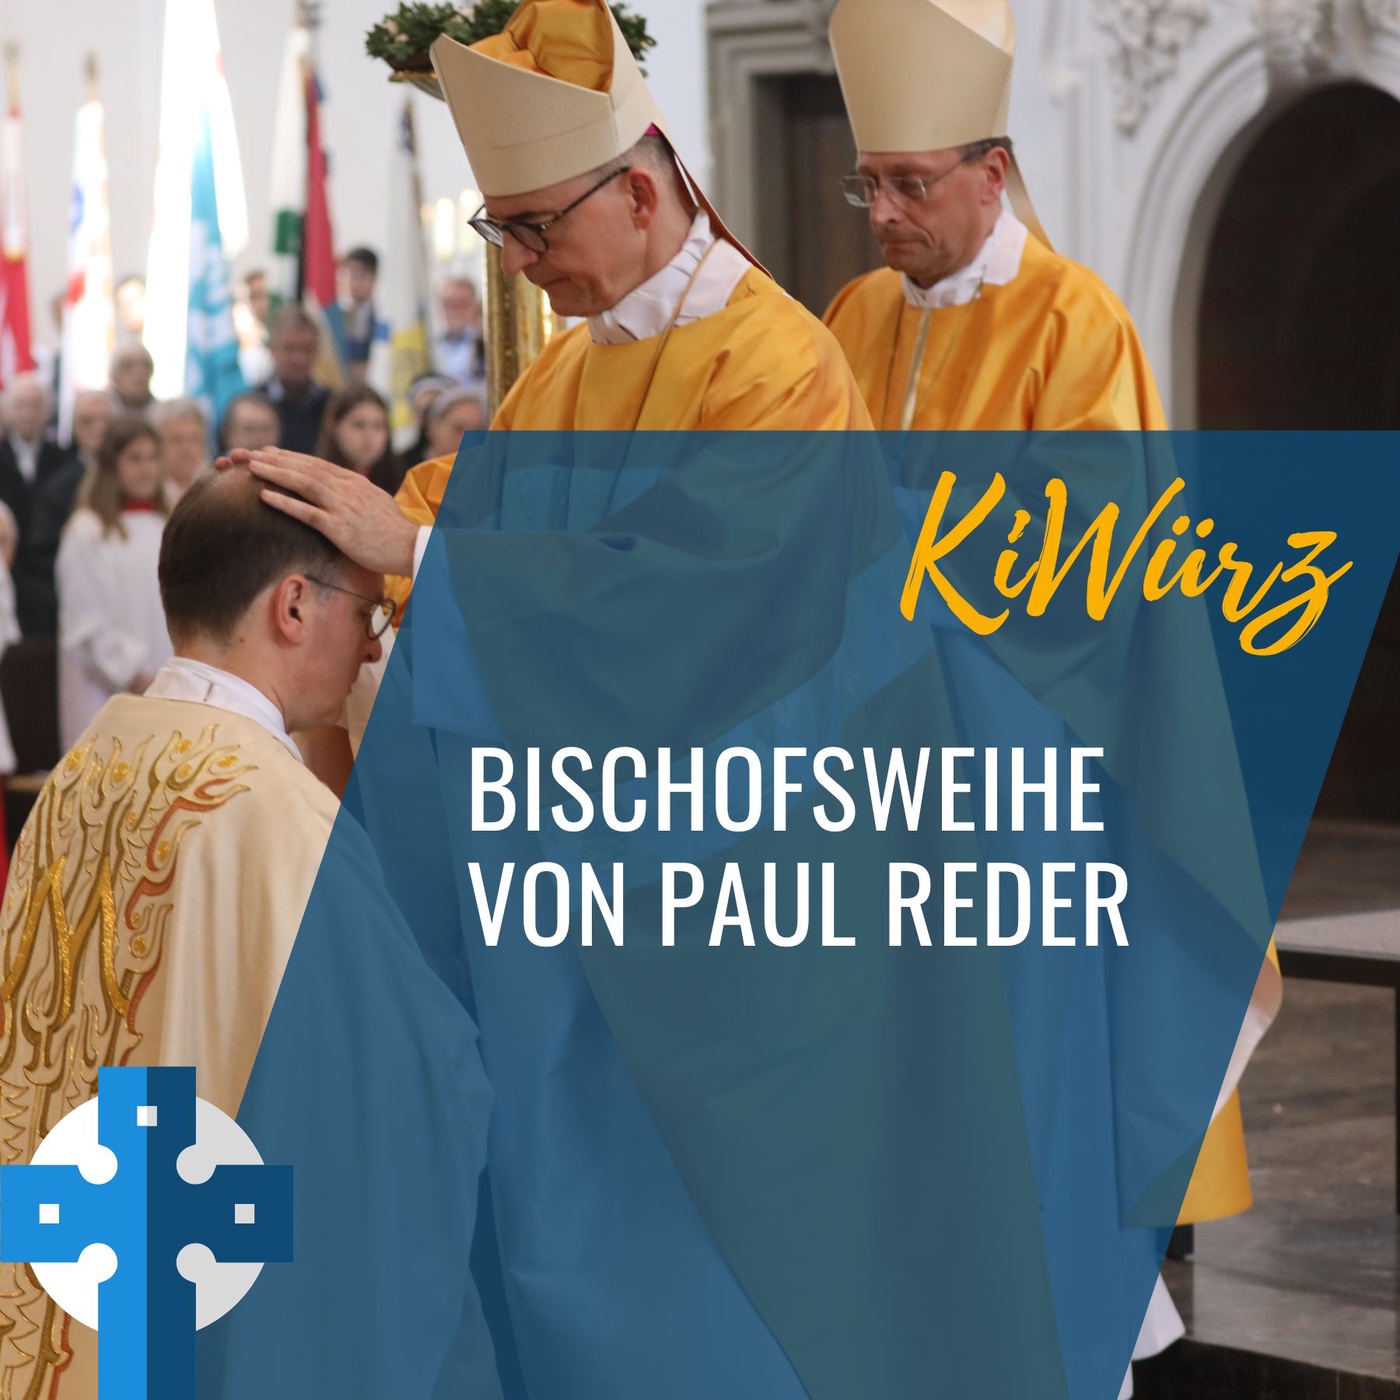 Bischofsweihe von Paul Reder